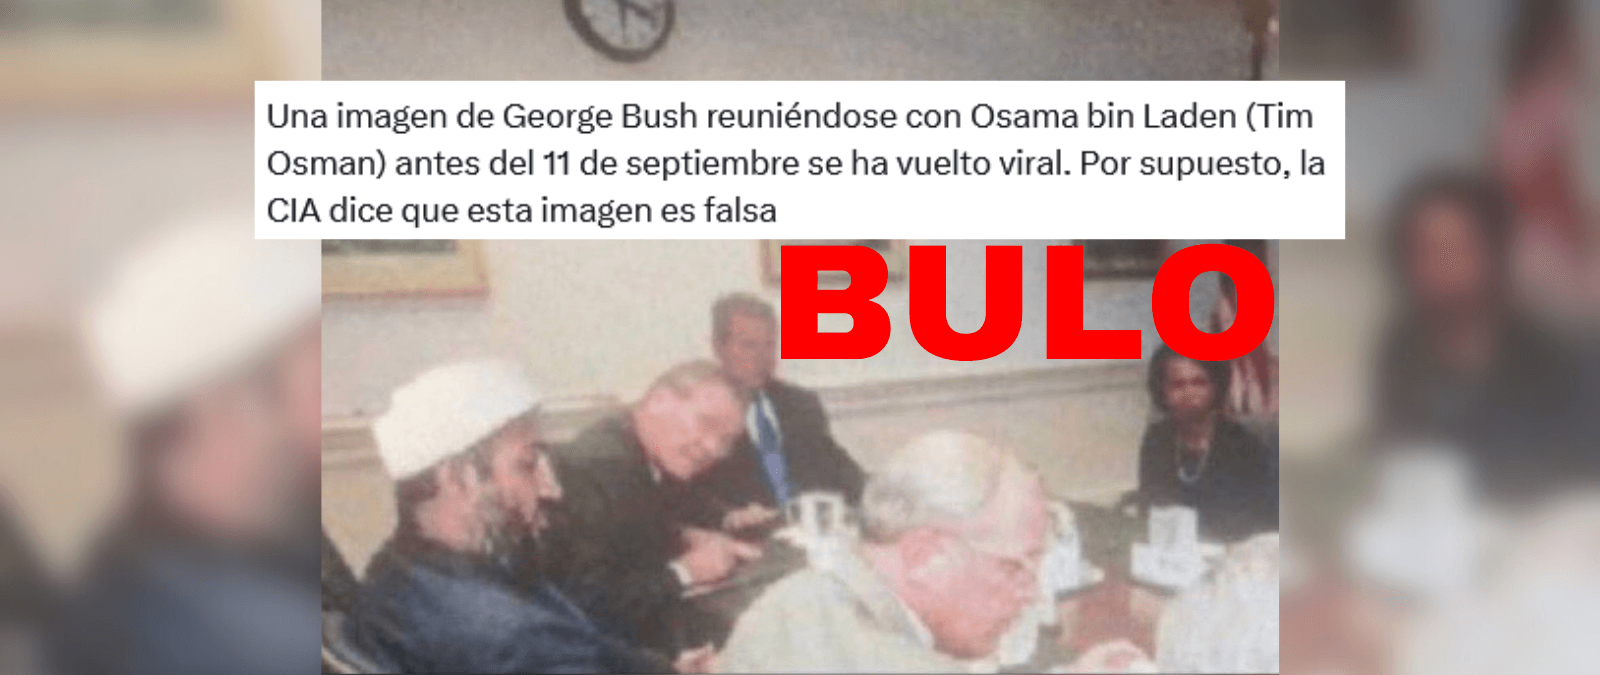 No, esta imagen de Osama bin Laden sentado en una reunión cerca de George W. Bush no es real: es un montaje